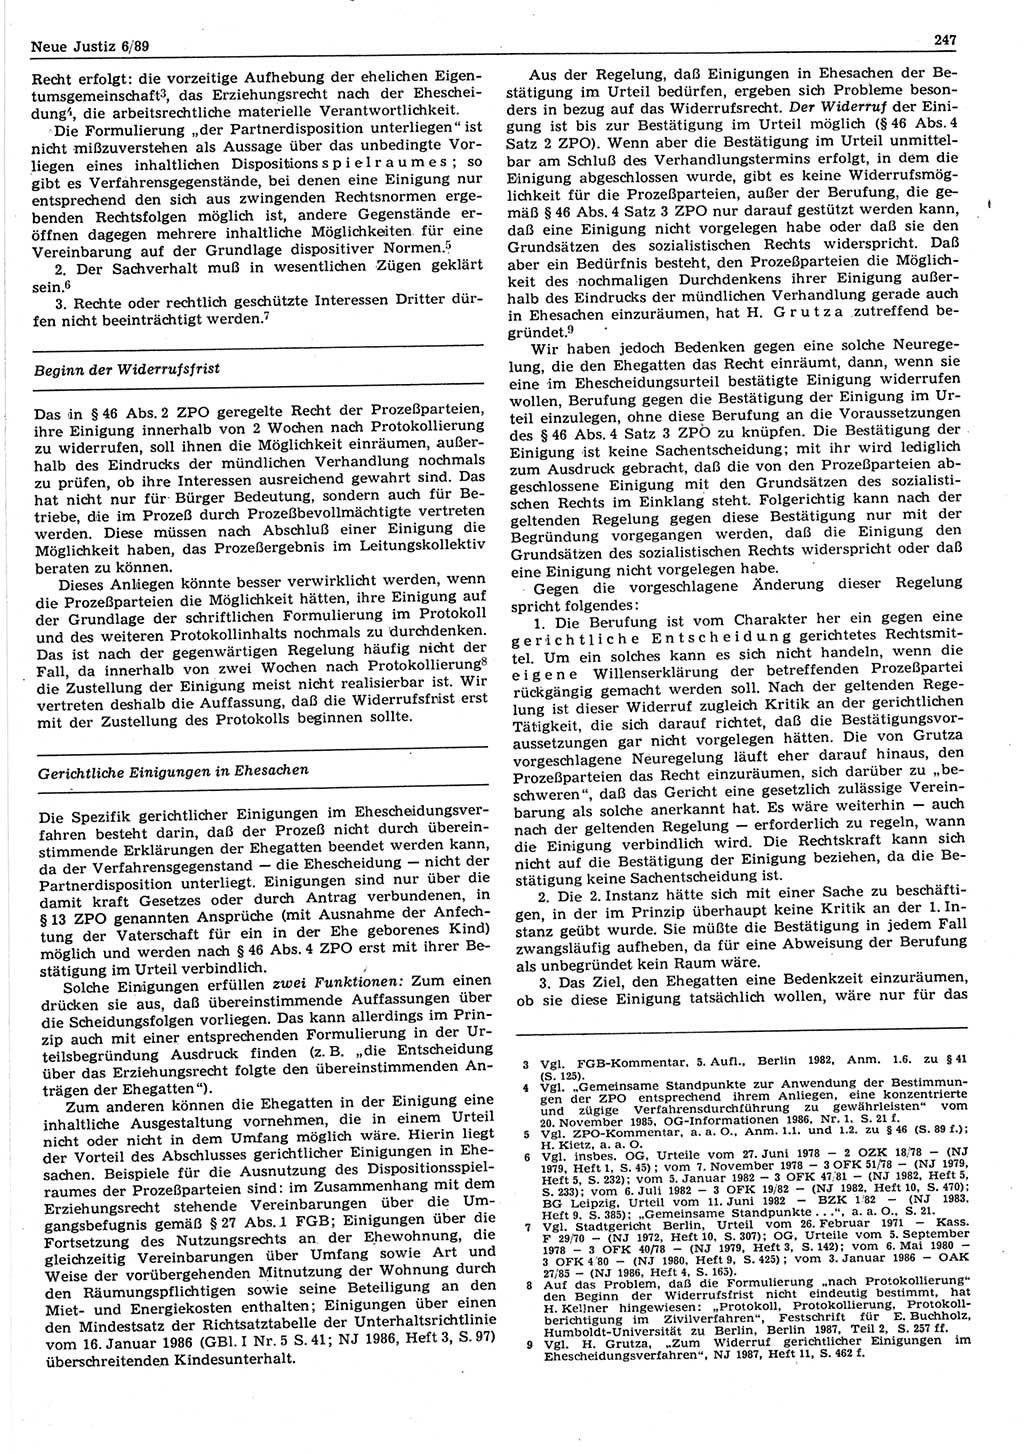 Neue Justiz (NJ), Zeitschrift für sozialistisches Recht und Gesetzlichkeit [Deutsche Demokratische Republik (DDR)], 43. Jahrgang 1989, Seite 247 (NJ DDR 1989, S. 247)